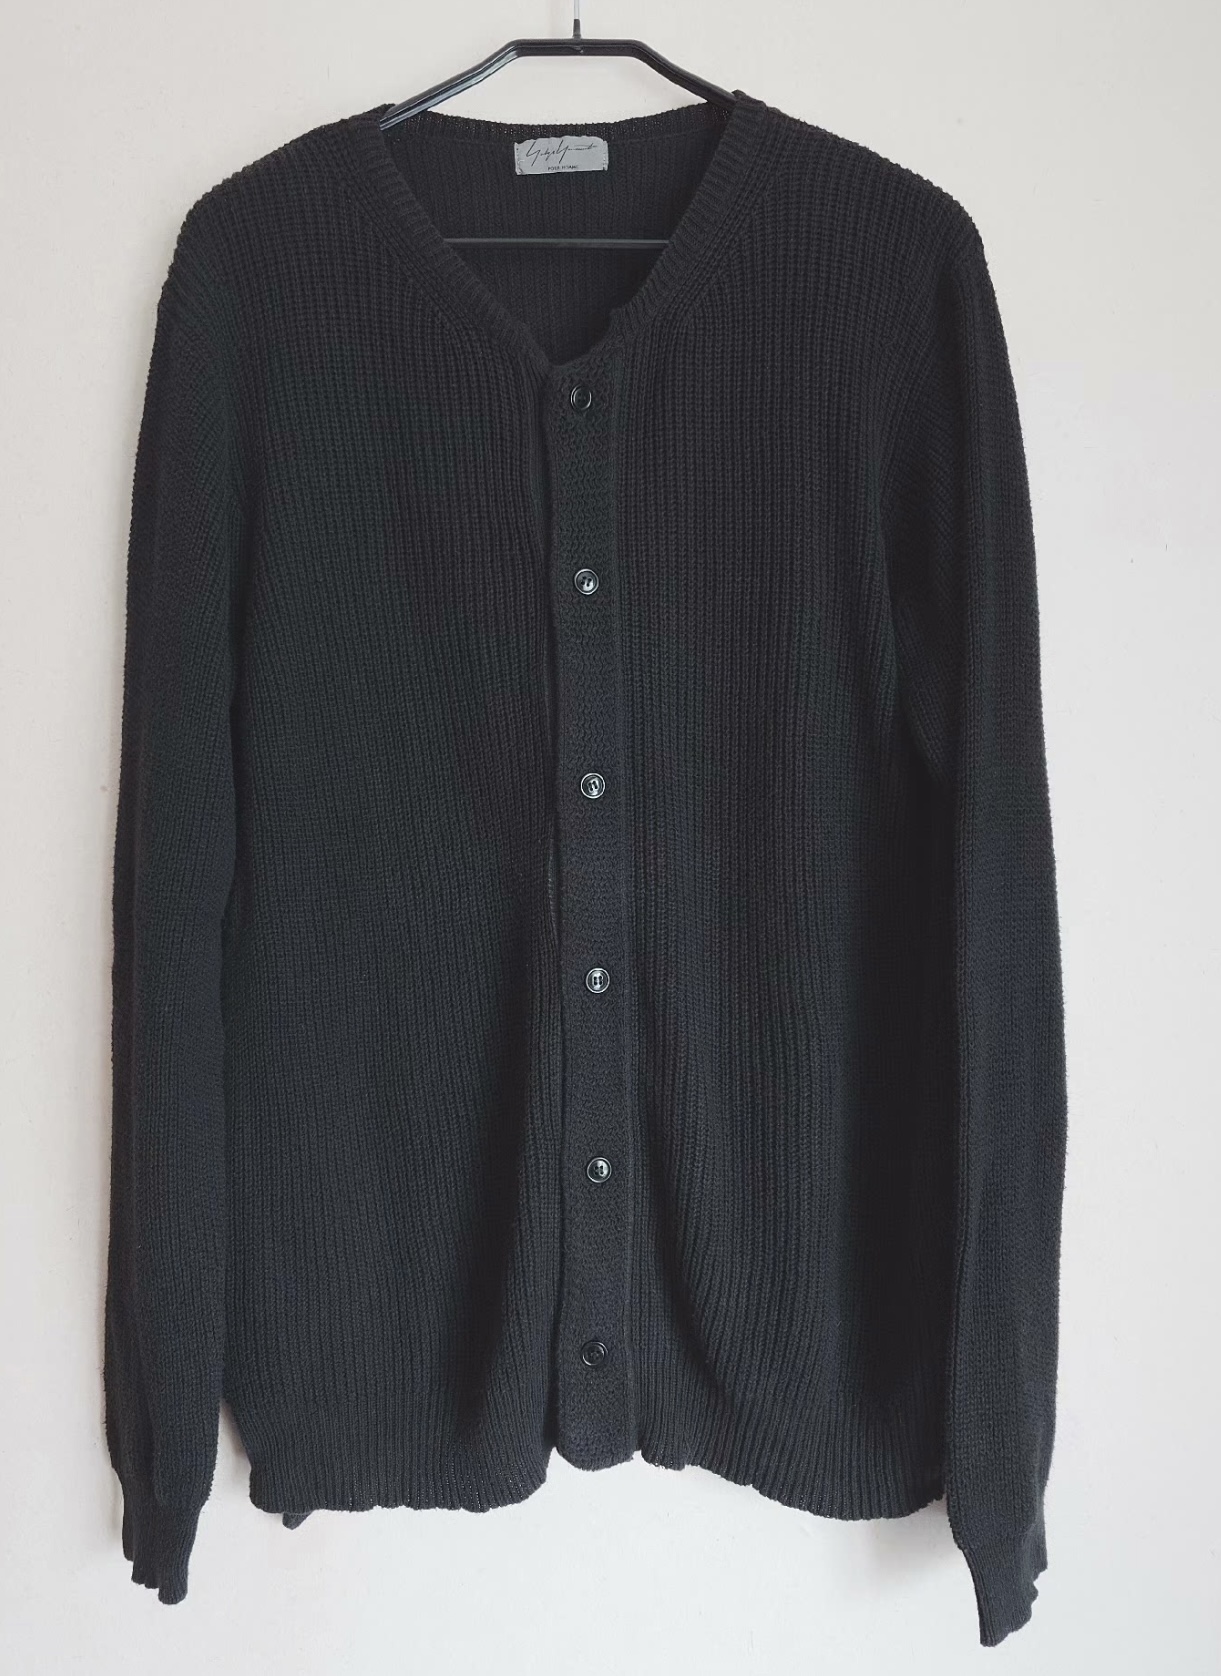 yohji yamamoto Yamamoto Yohji main line black cotton knitted sweater cardigan - 1